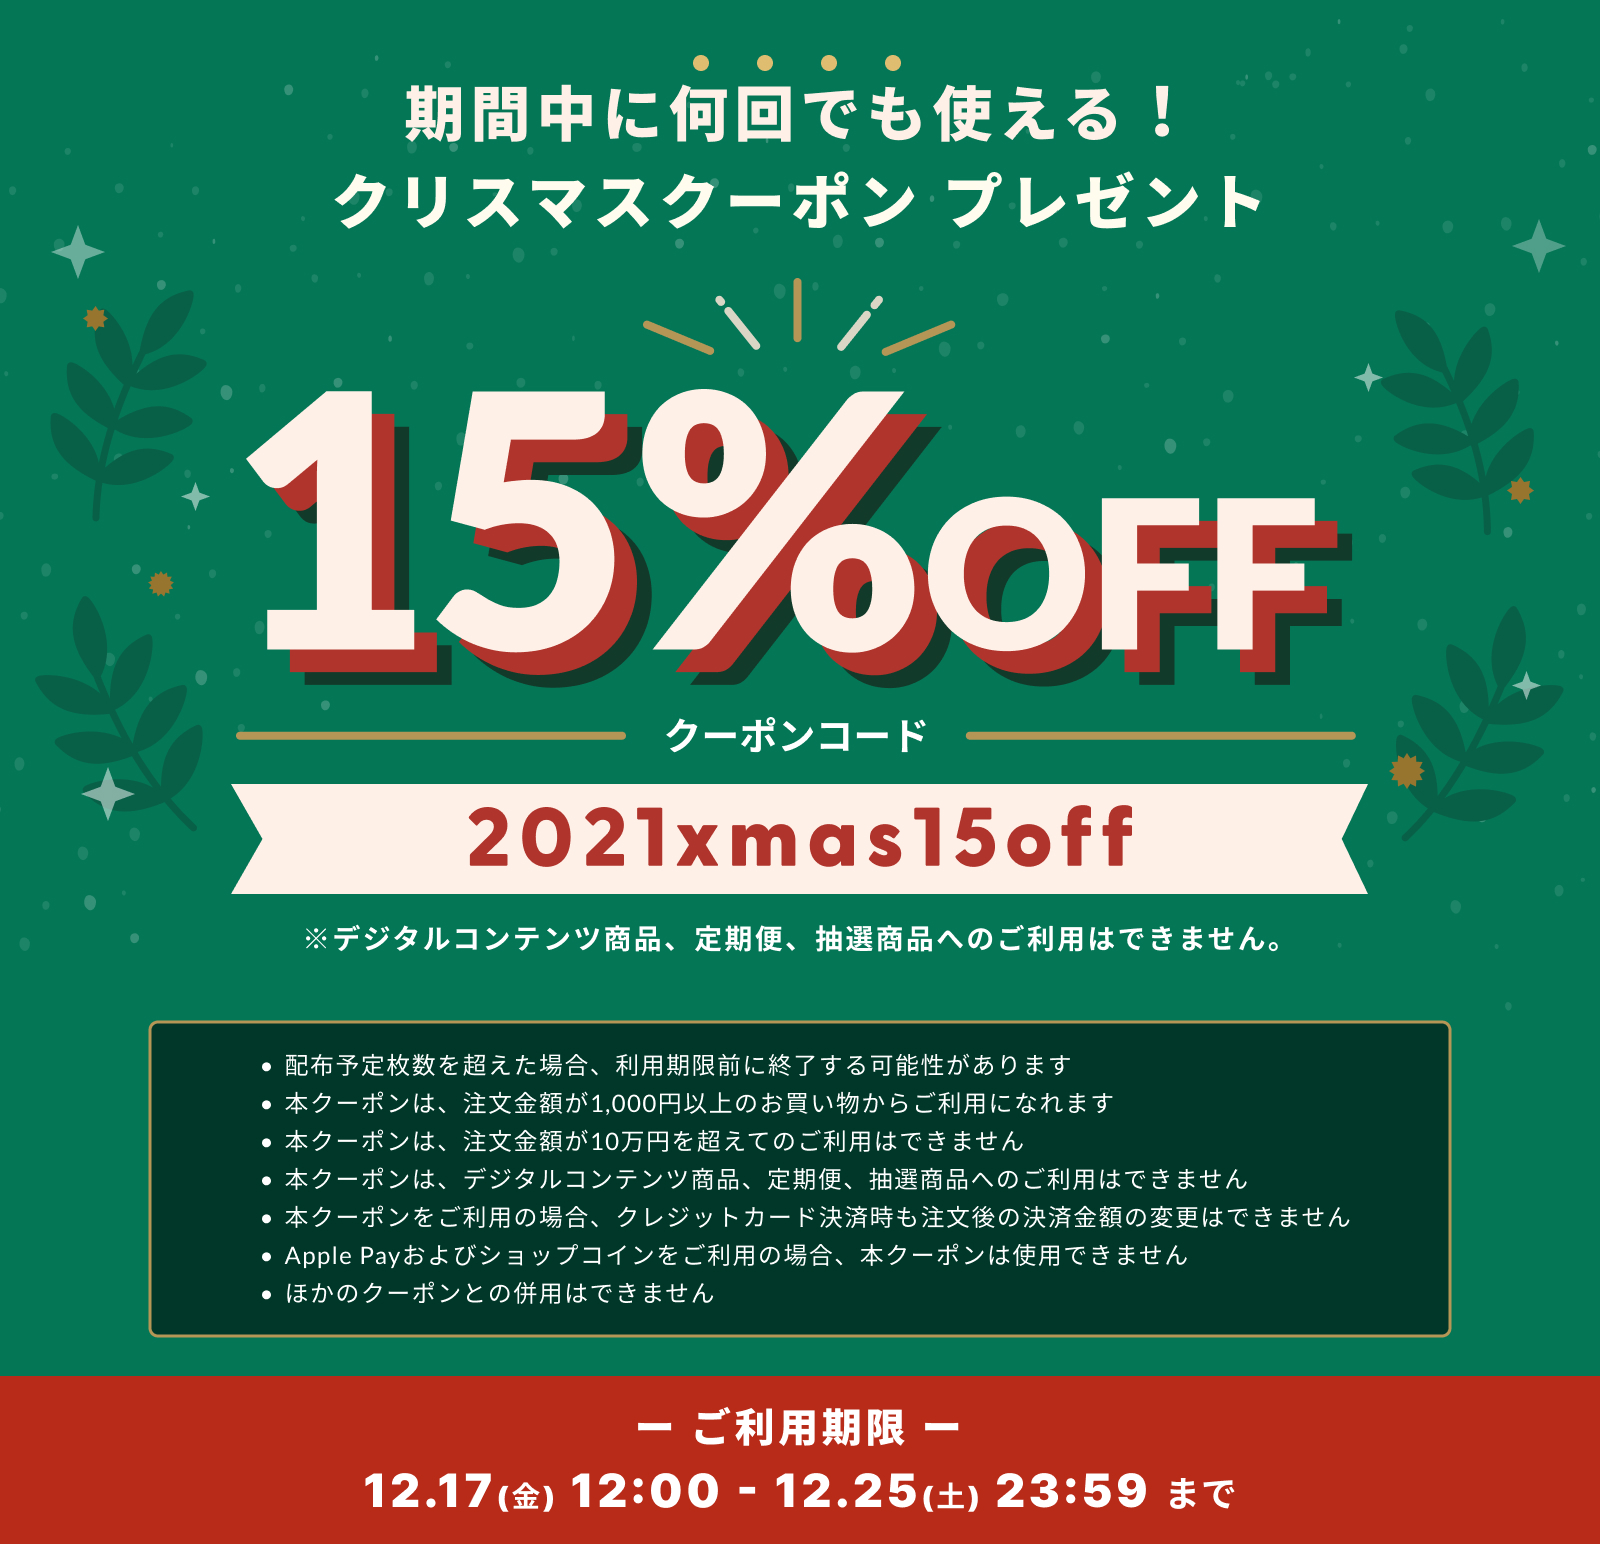 【12/17～12/25 期間限定】お得な15%OFF「クリスマスクーポンキャンペーン」